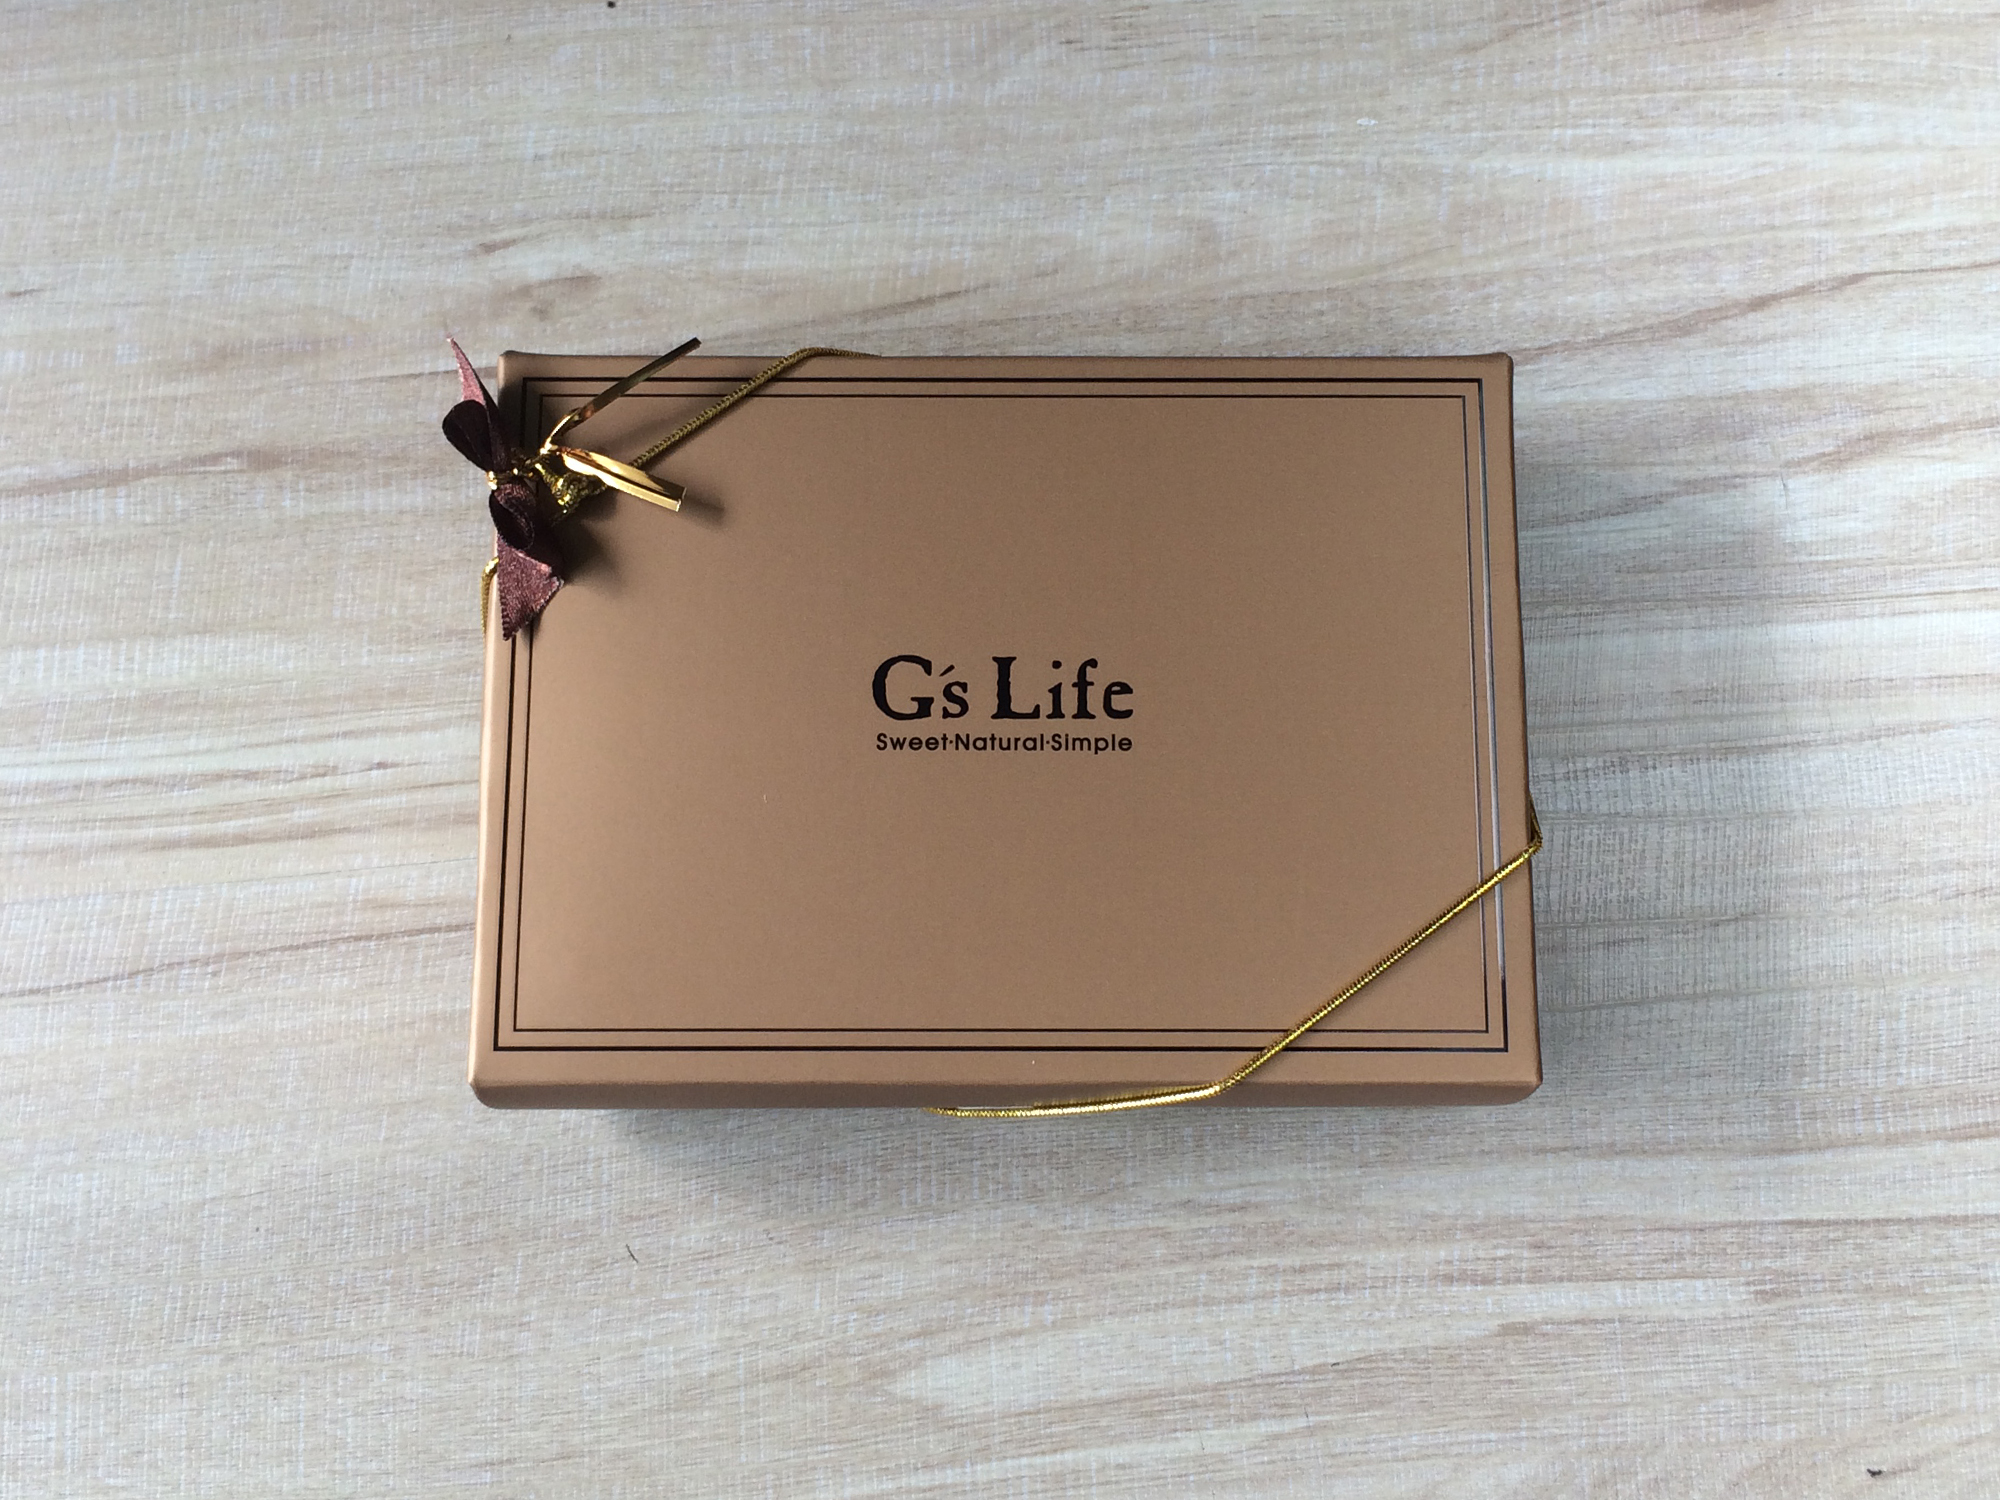 【2/20~3/31女神節9折優惠】G’s Life 可可花兒‧六入方塊巧克力香皂禮盒